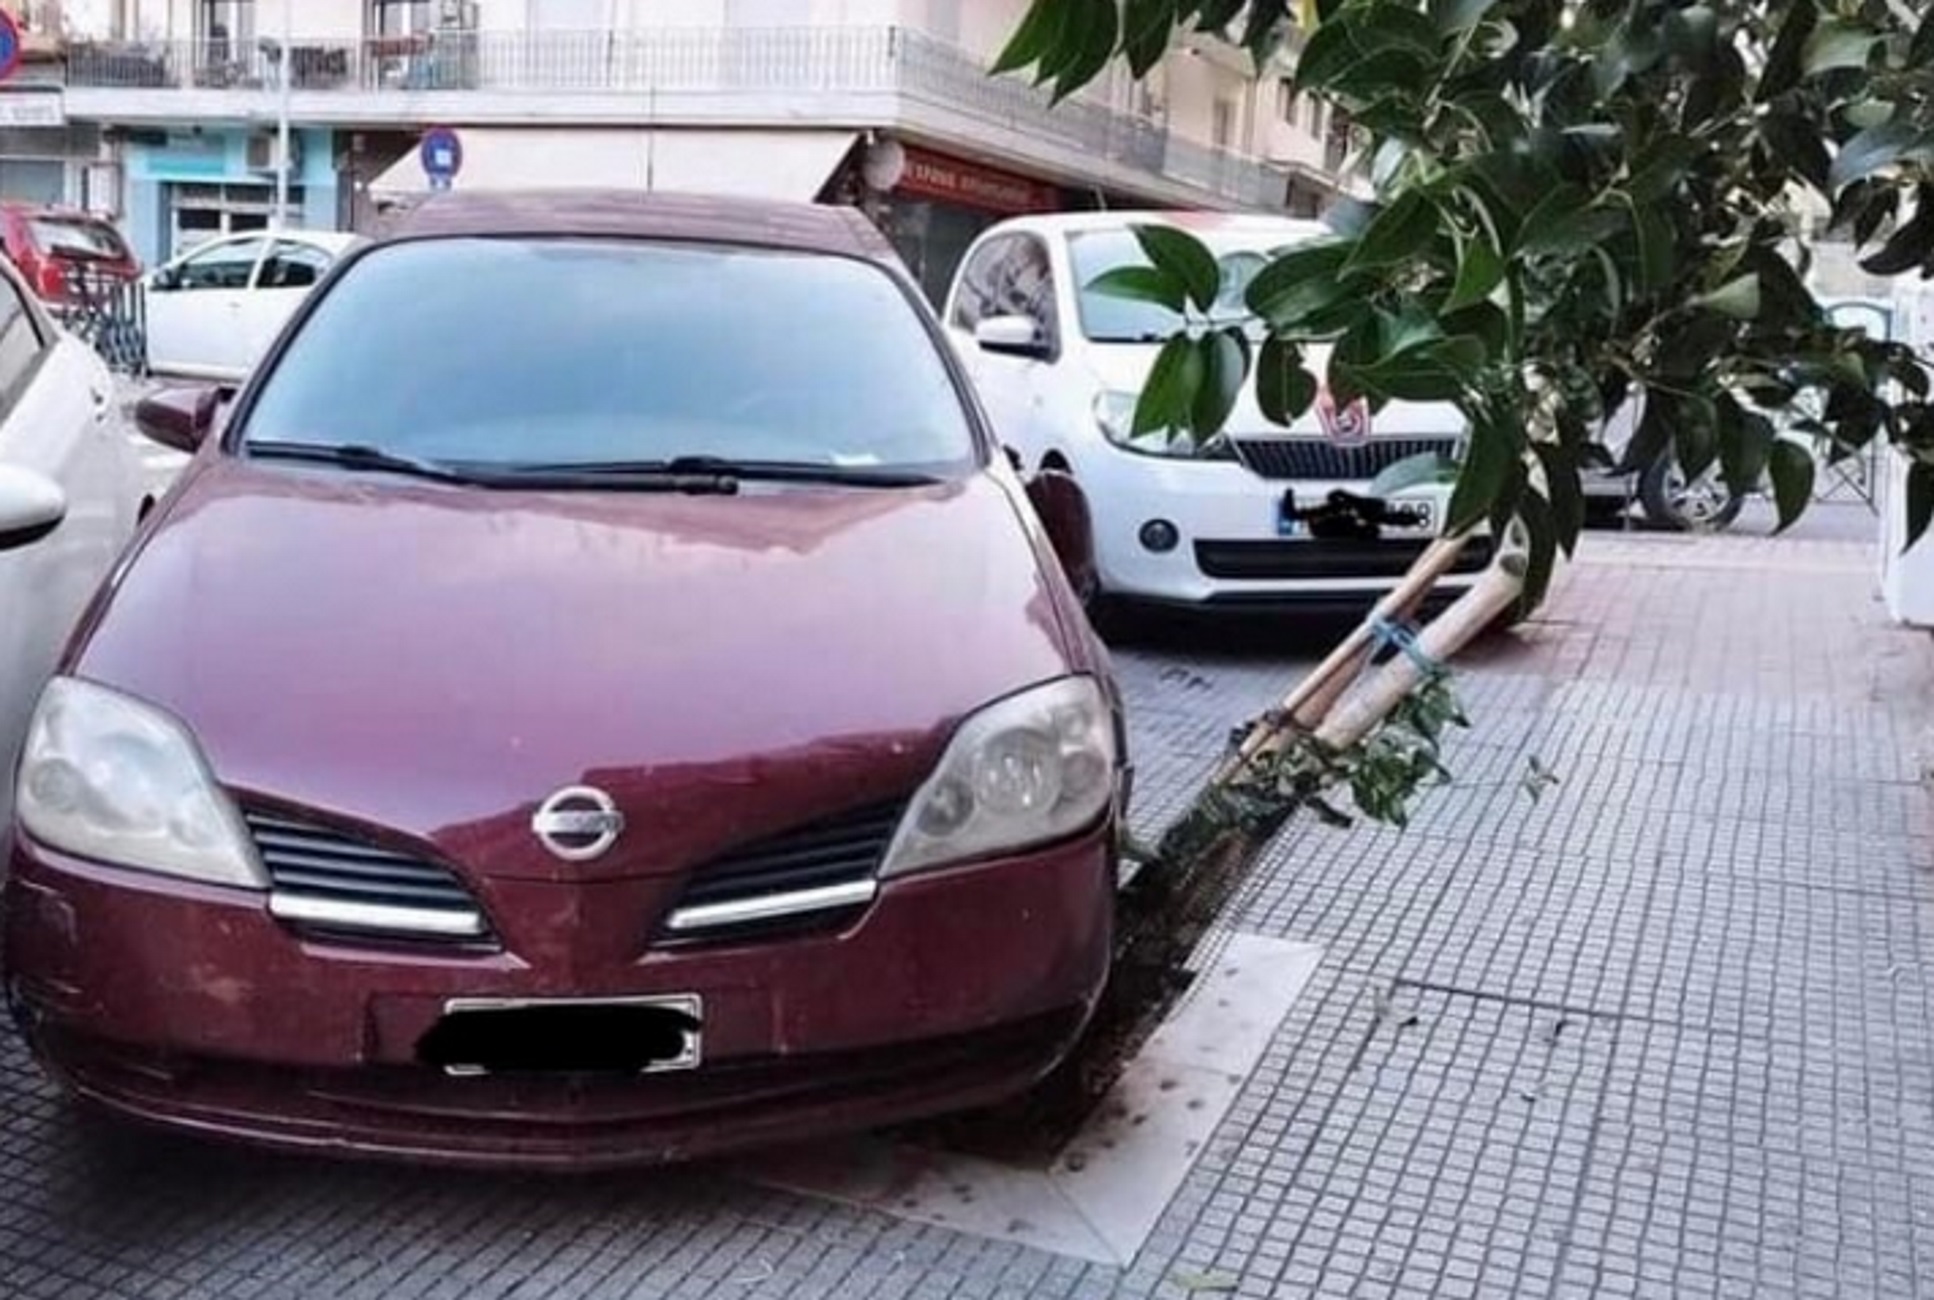 Θεσσαλονίκη: Διέλυσε δέντρο πάνω σε πεζοδρόμιο για να παρκάρει παράνομα